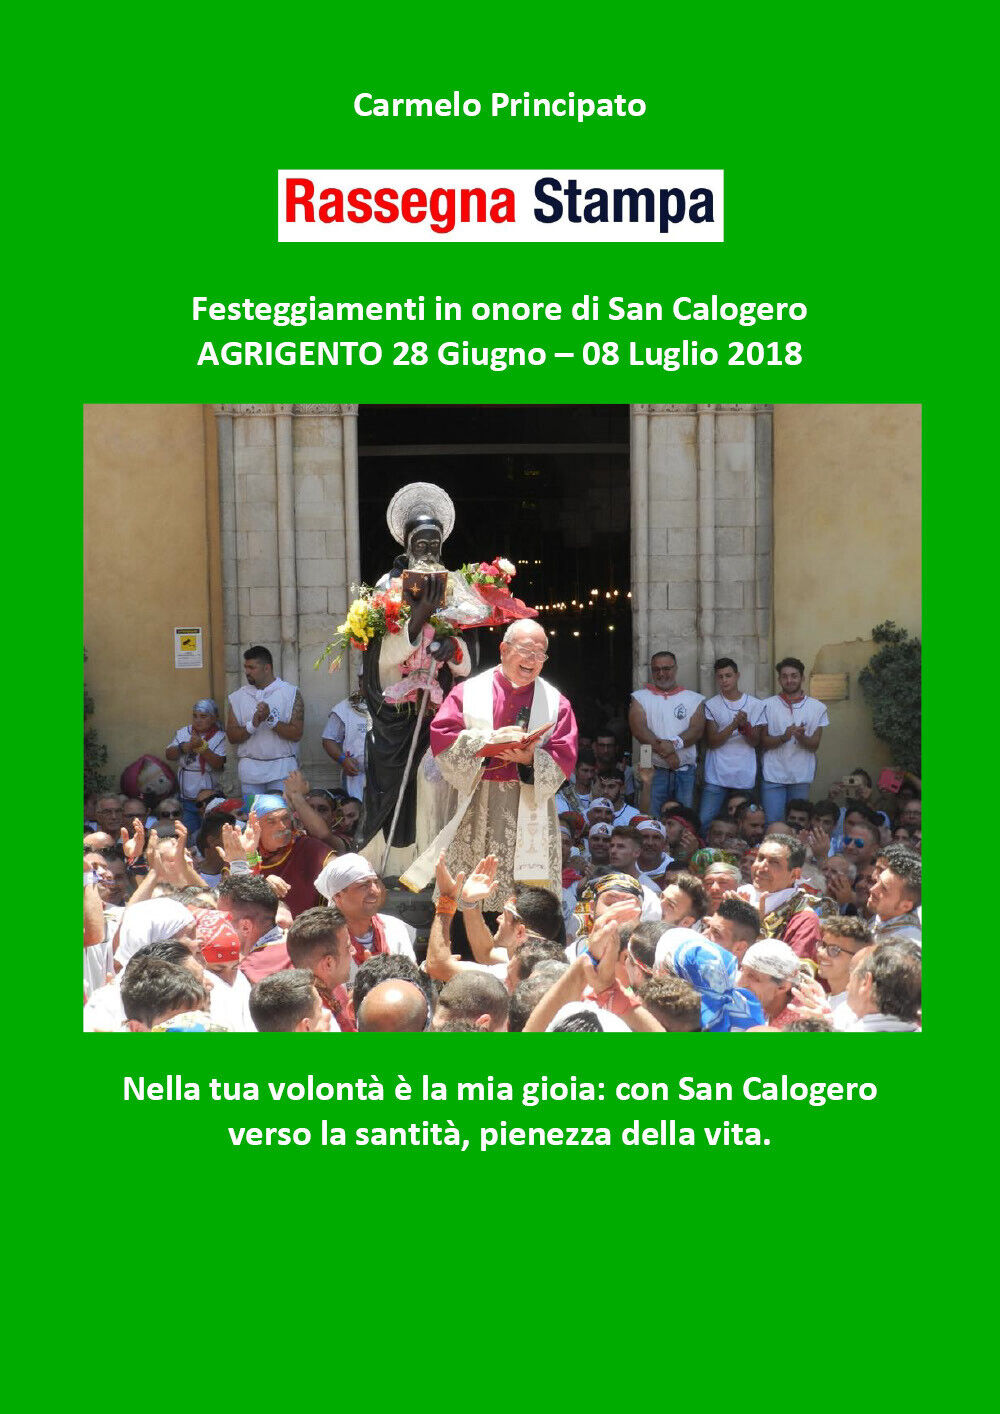 Rassegna Stampa - Festeggiamenti in onore di San Calogero - Agrigento 28 Giugno